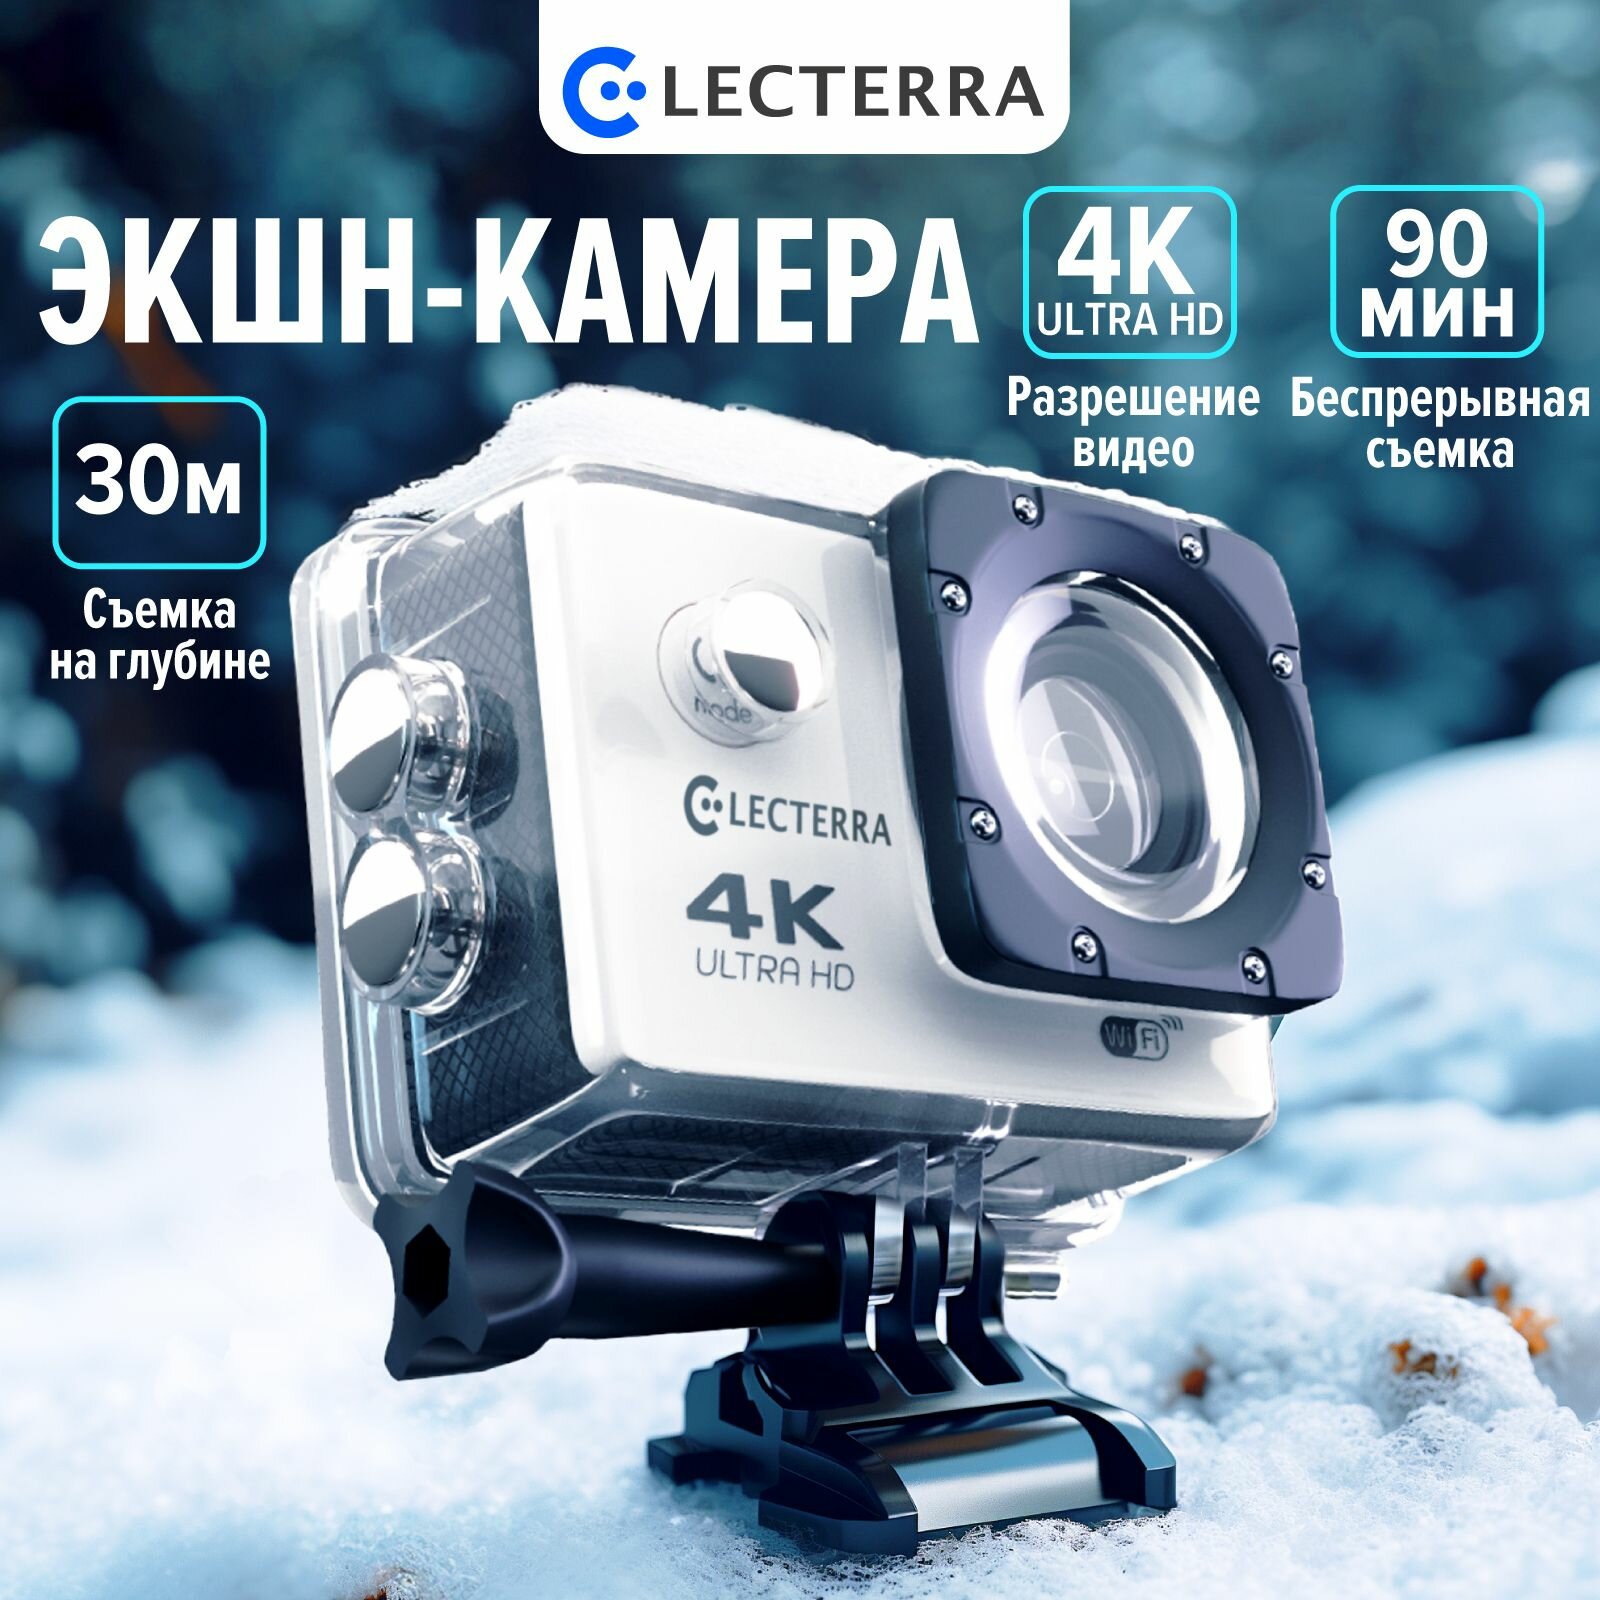 Экшн-камера Electerra. Водонепроницаемая экшн камера 4K с креплениями и защитным кейсом для дайвинга.